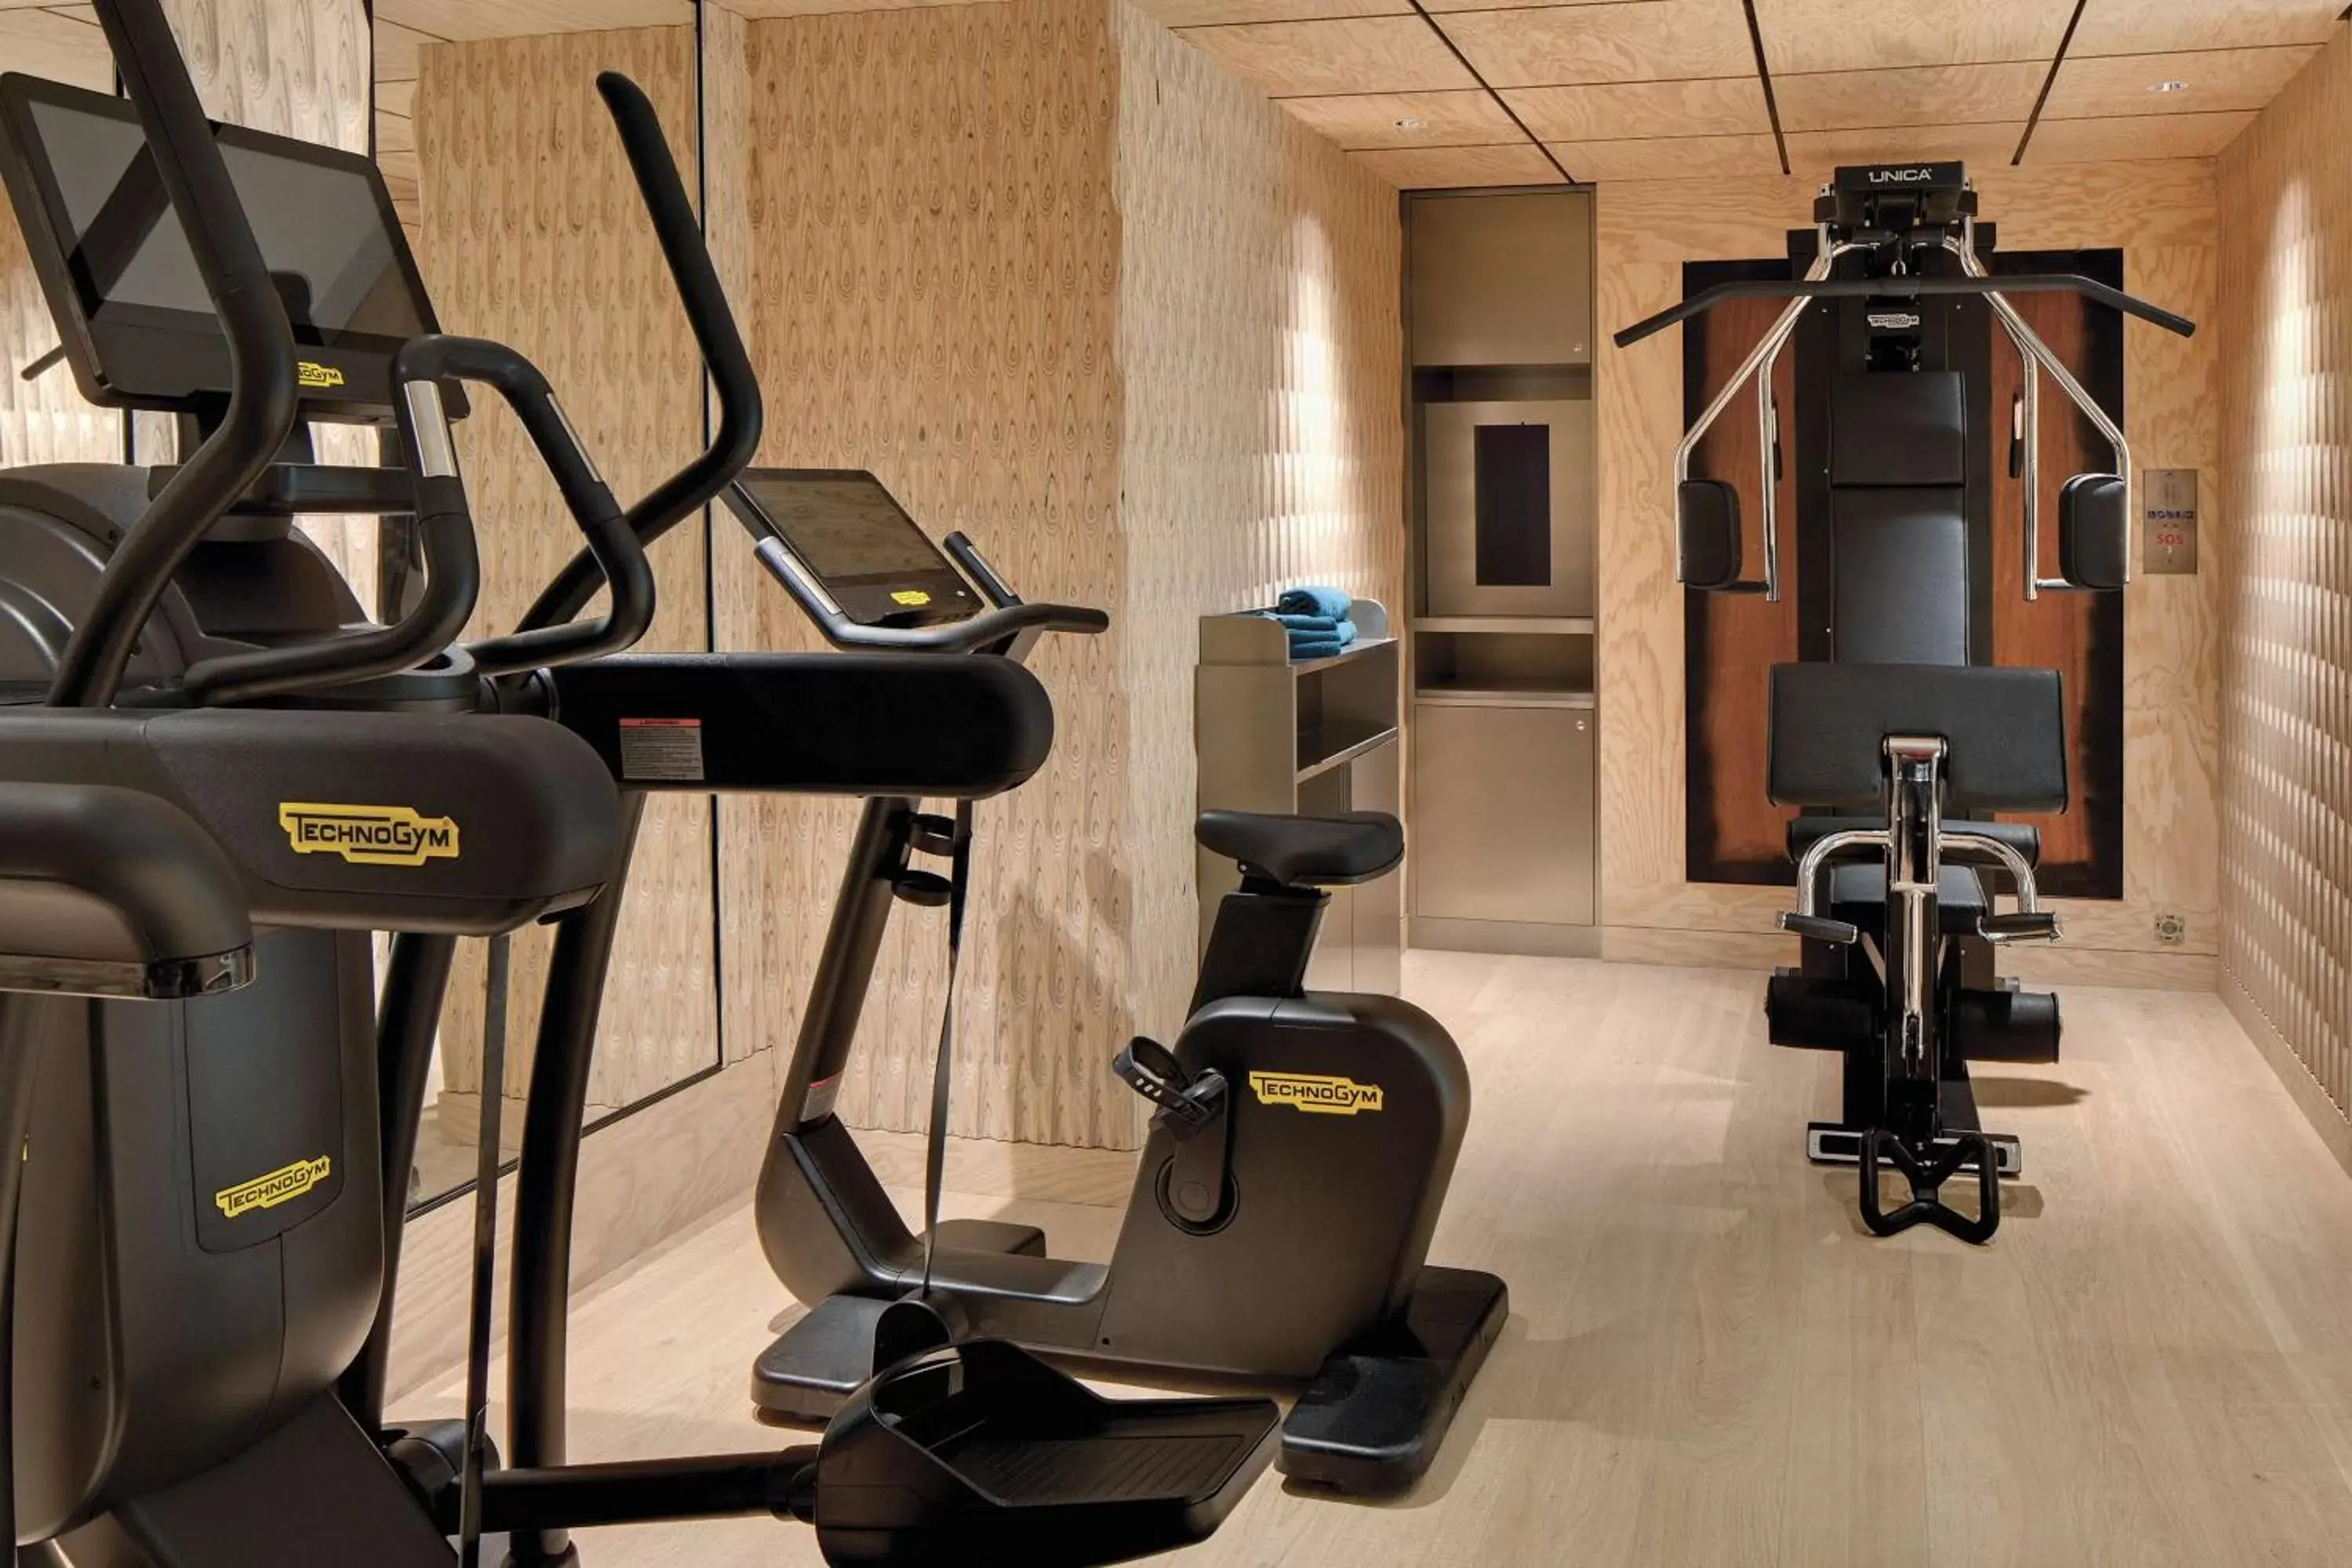 Fitness centre/facilities, Fitness Center/Facilities in La Demeure Montaigne